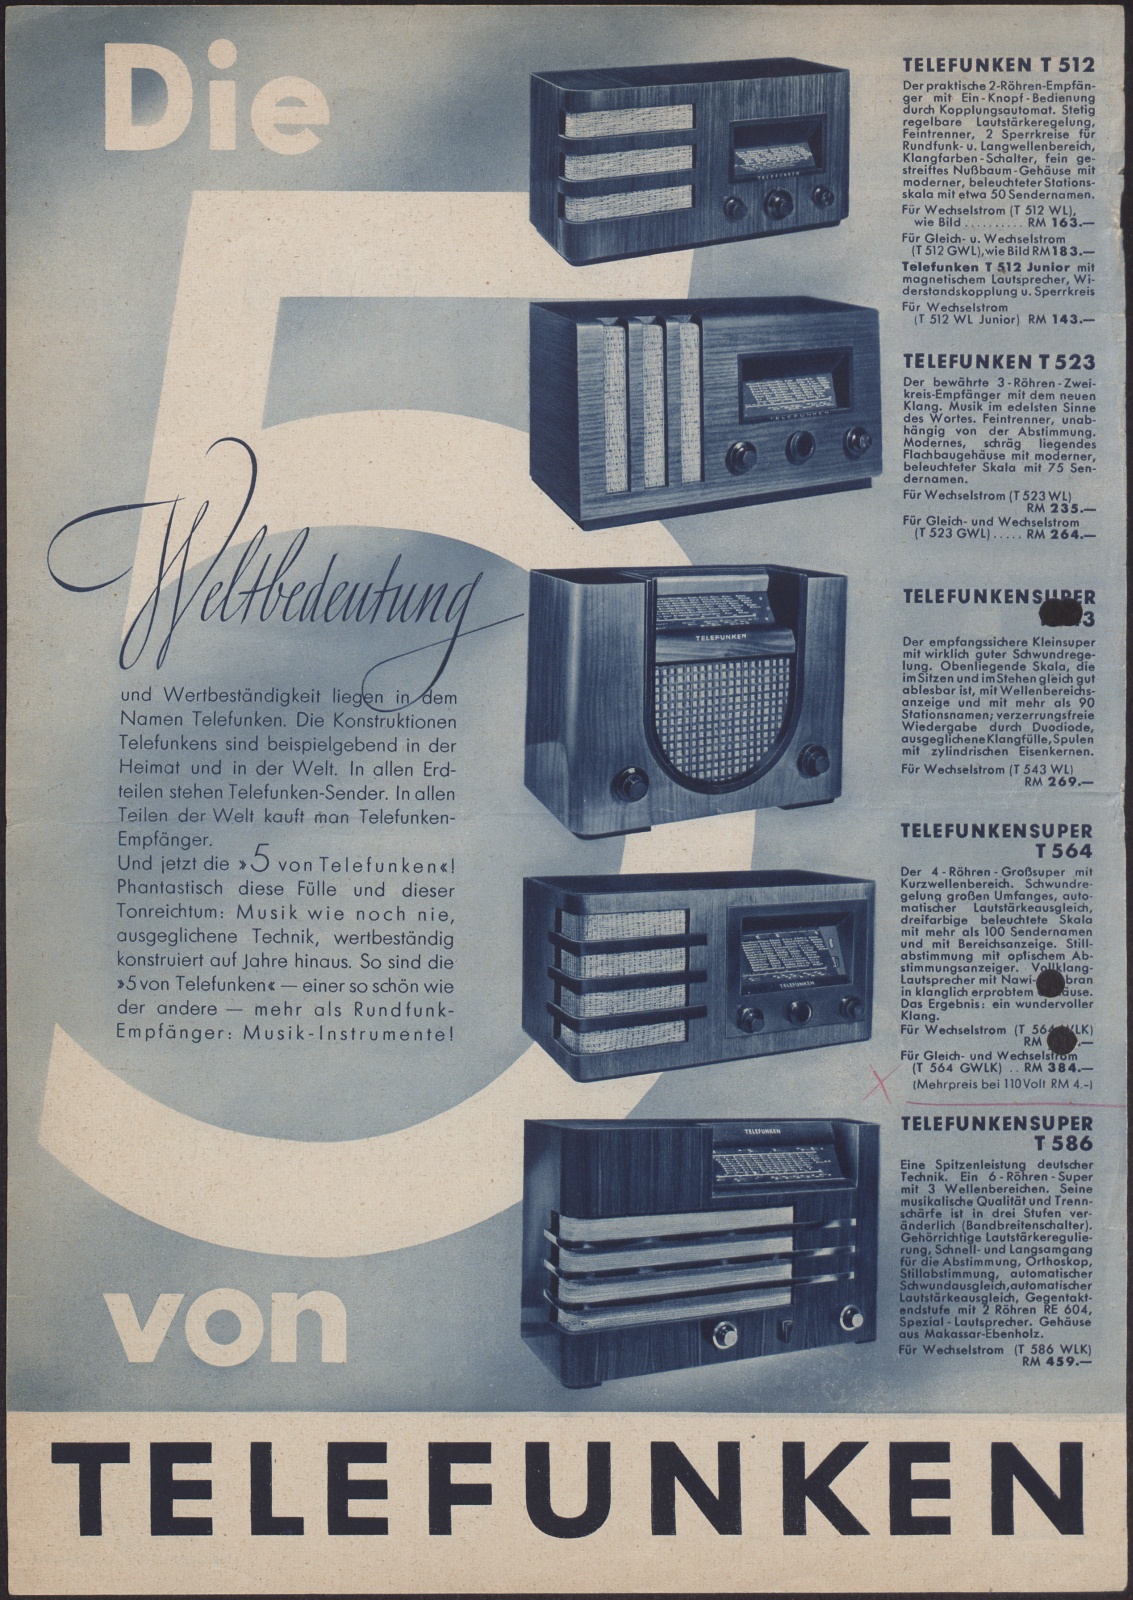 Werbeblatt: Die 5 : Weltbedeutung vonTelefunken (Stiftung Deutsches Technikmuseum Berlin CC0)